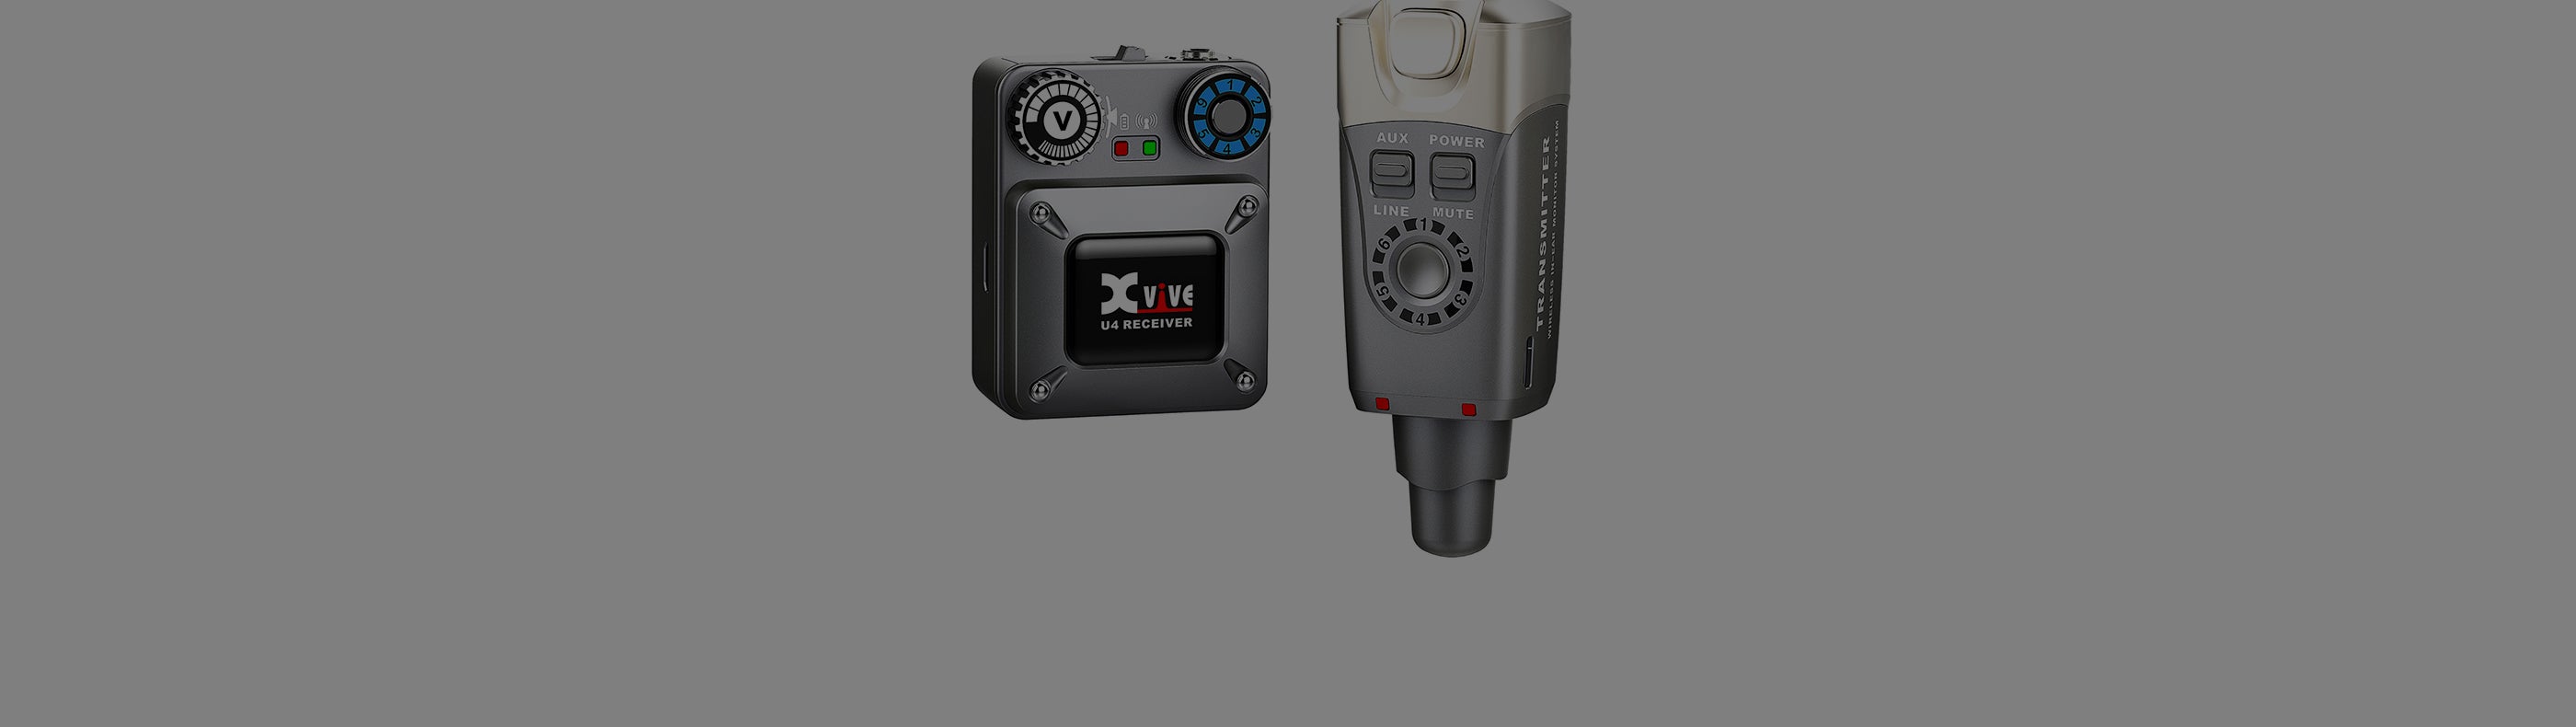 Xvive U4 In-Ear Monitor Wireless